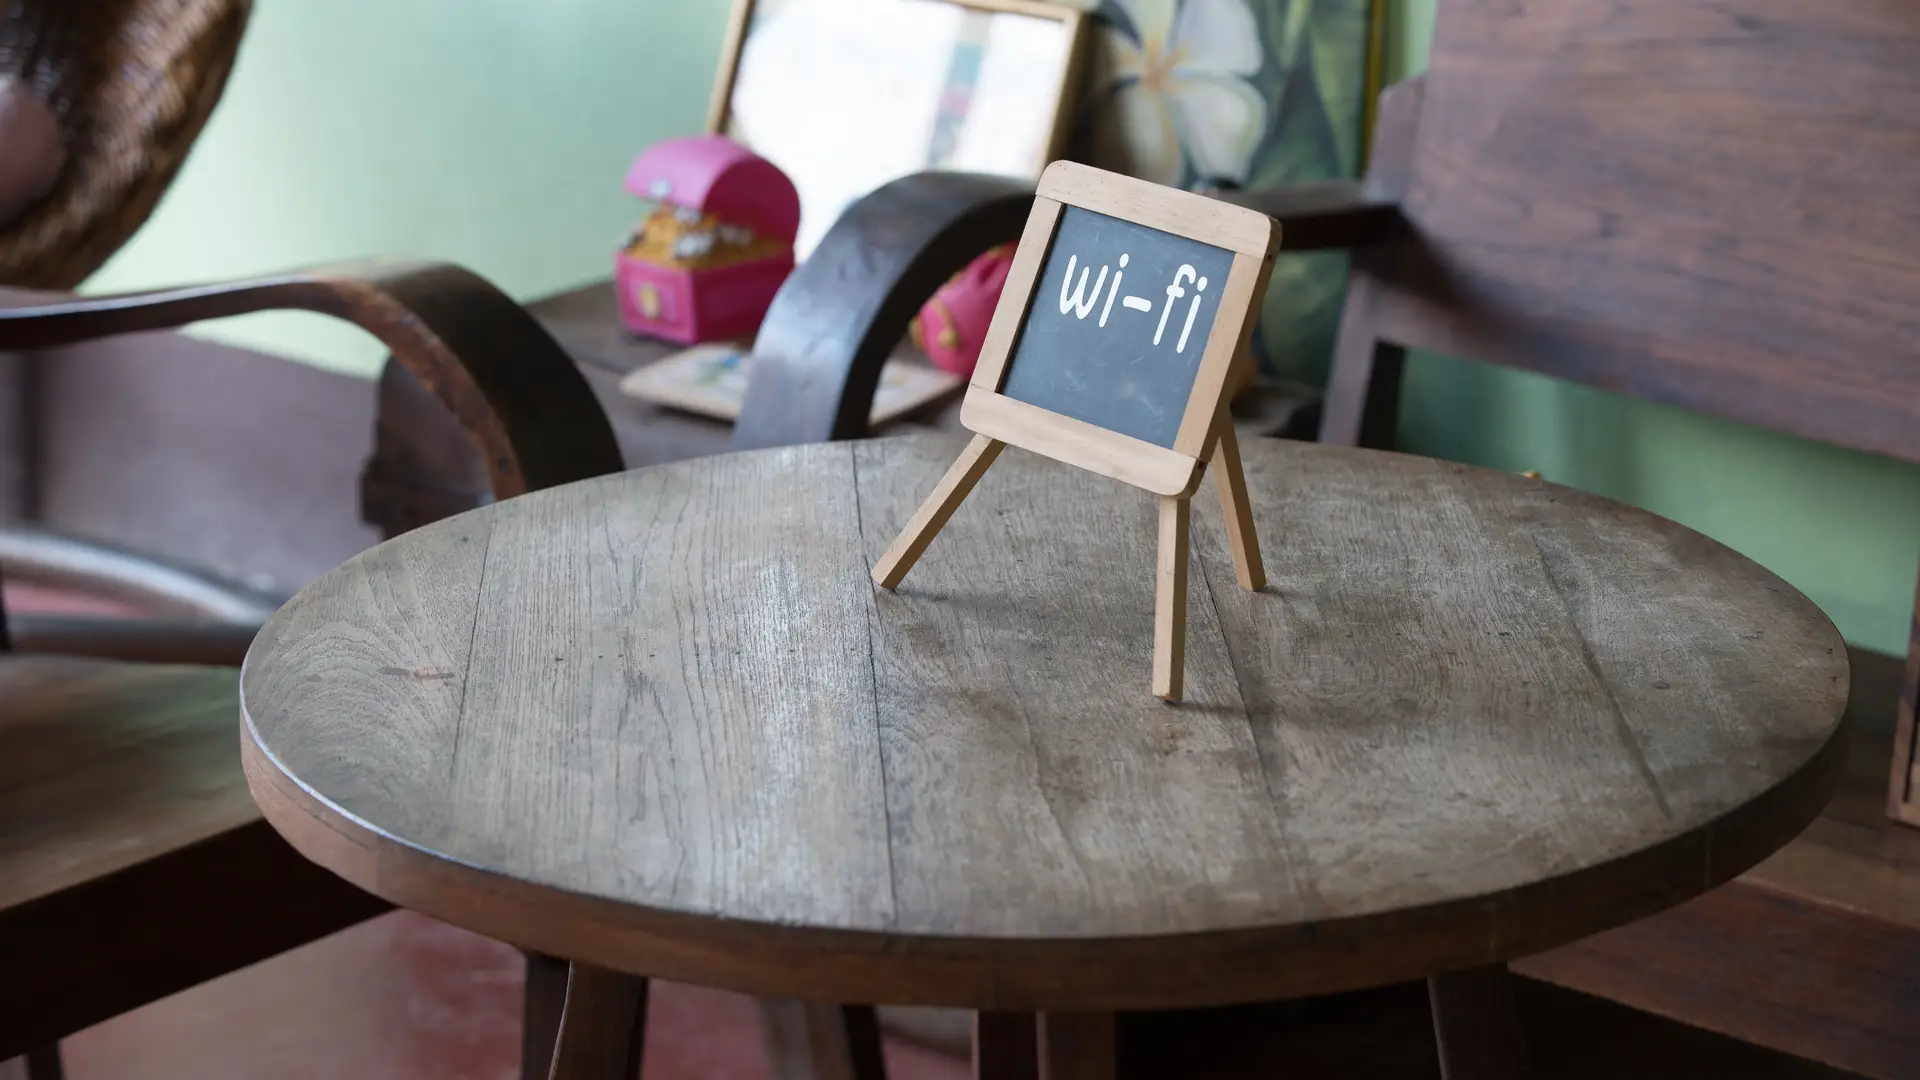 Cartel con la palabra wifi en una mesa que hace referencia a una zona de internet wifi